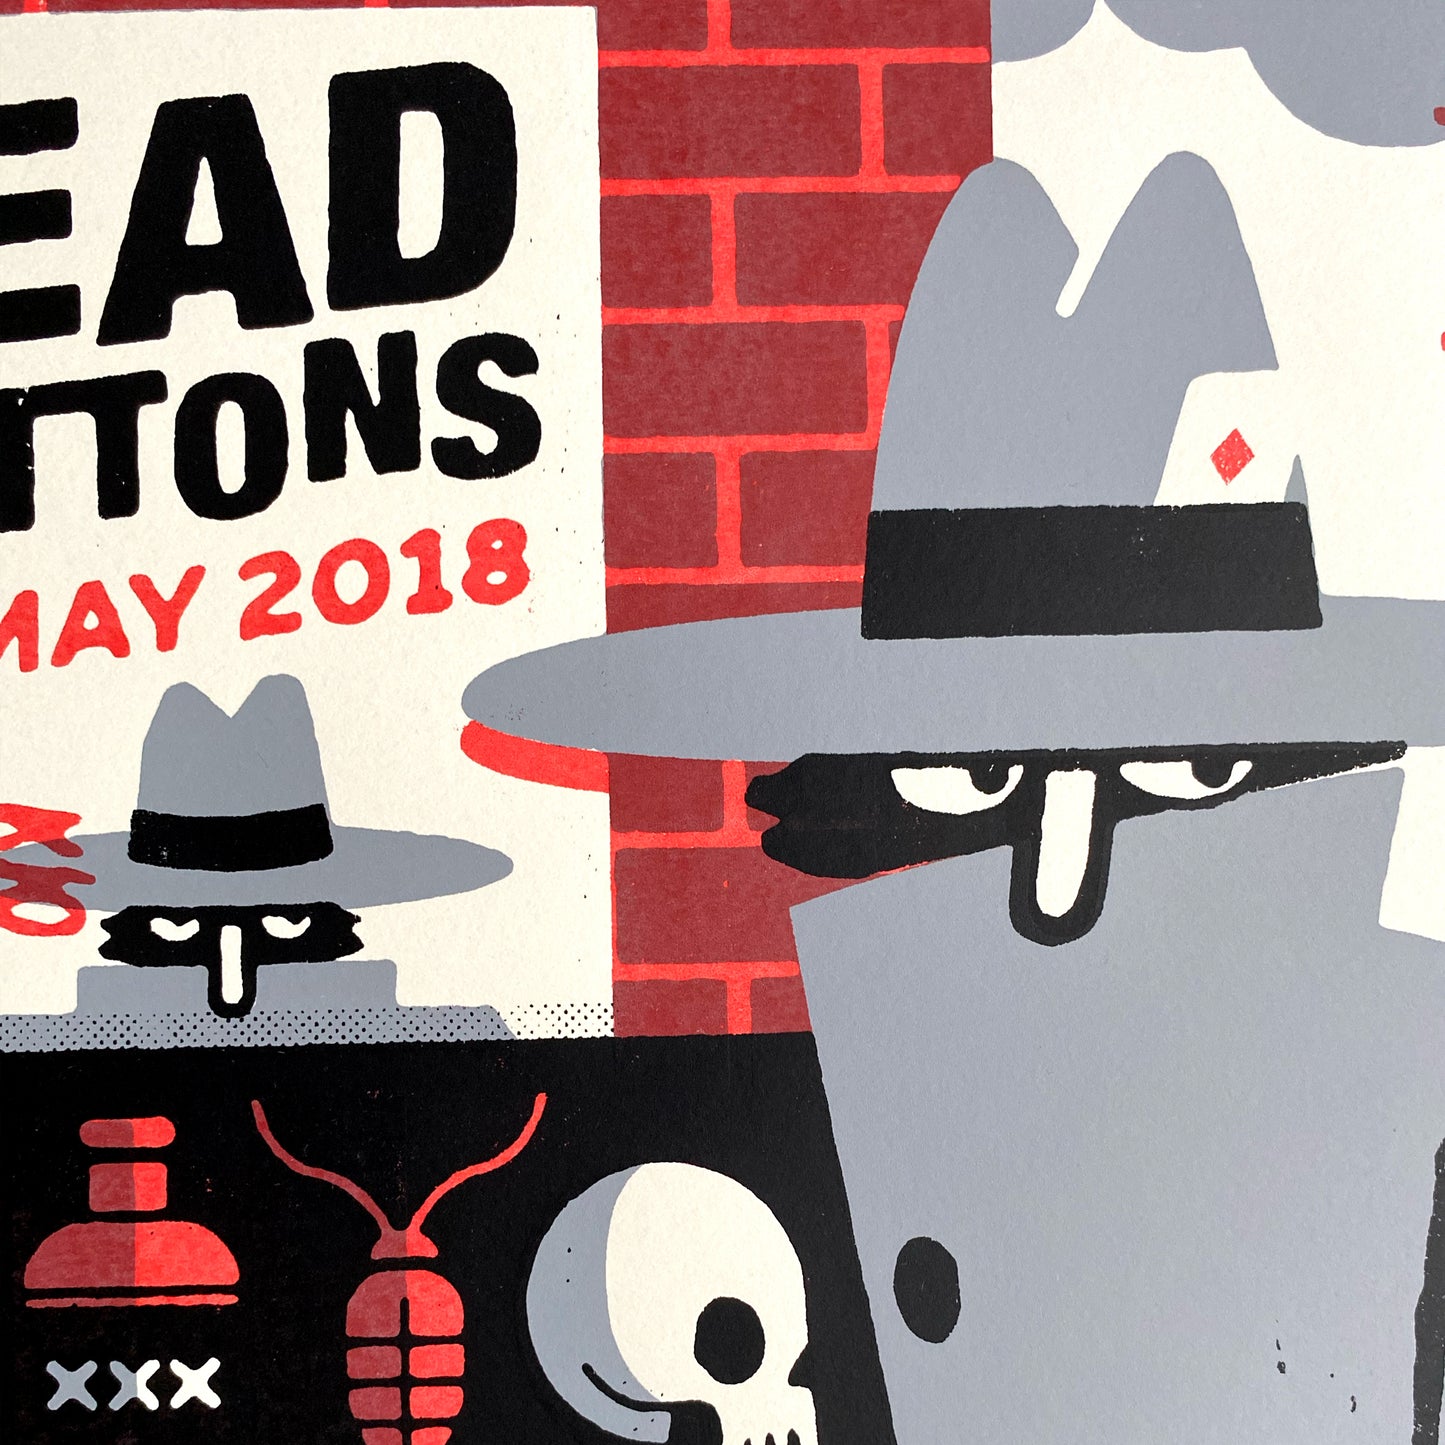 Dead Buttons - Sound CIty 2018